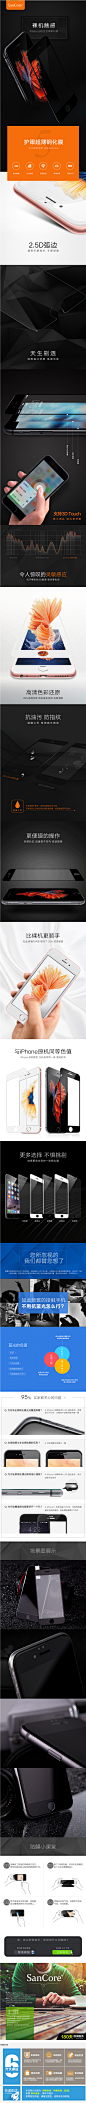 SanCore iPhone6钢化玻璃膜抗蓝光